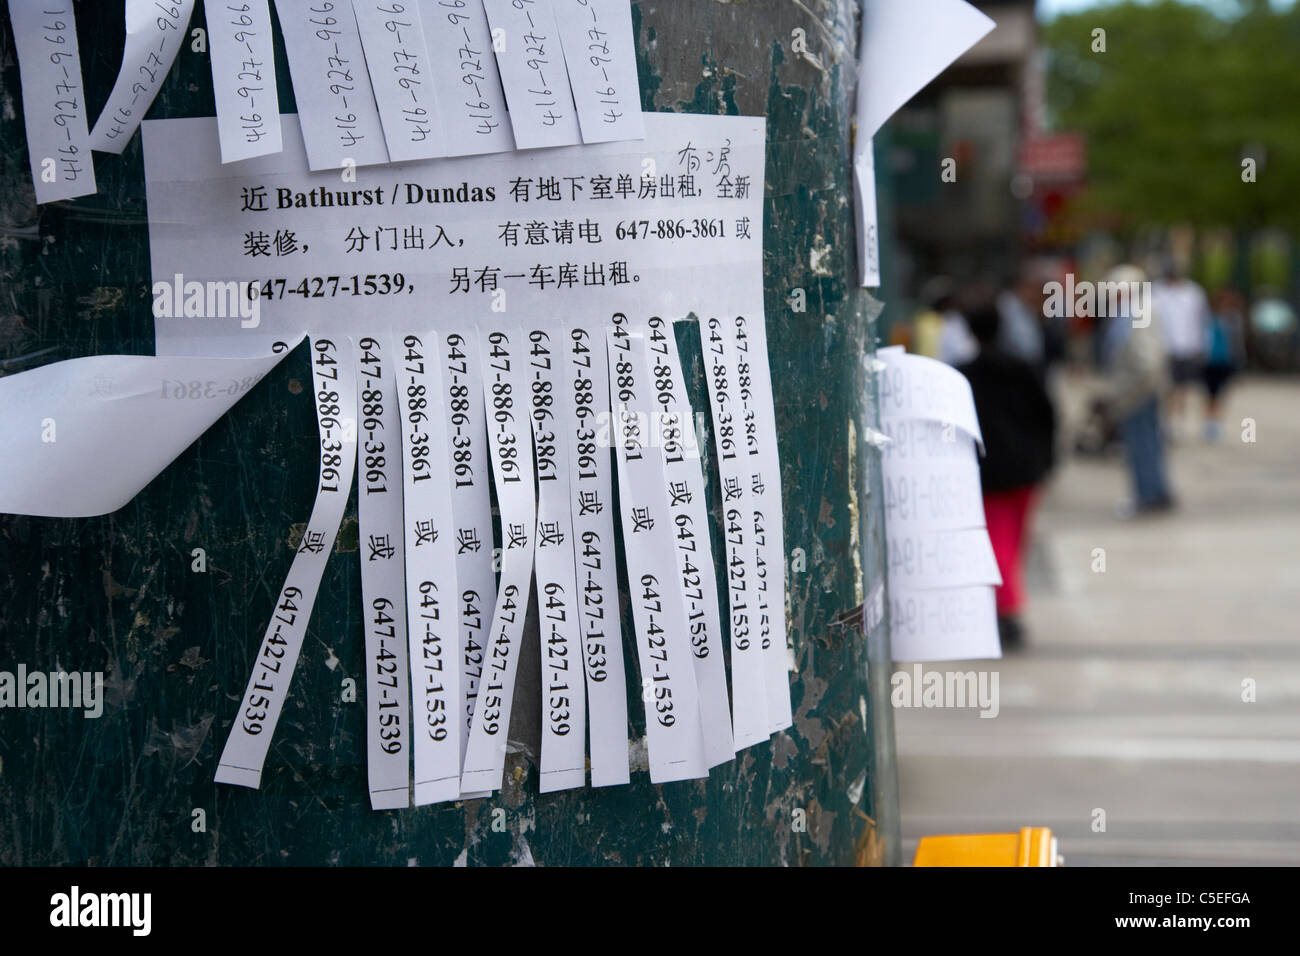 Bilingual strappo strisce pubblicitarie sul lampione in chinatown toronto ontario canada Foto Stock